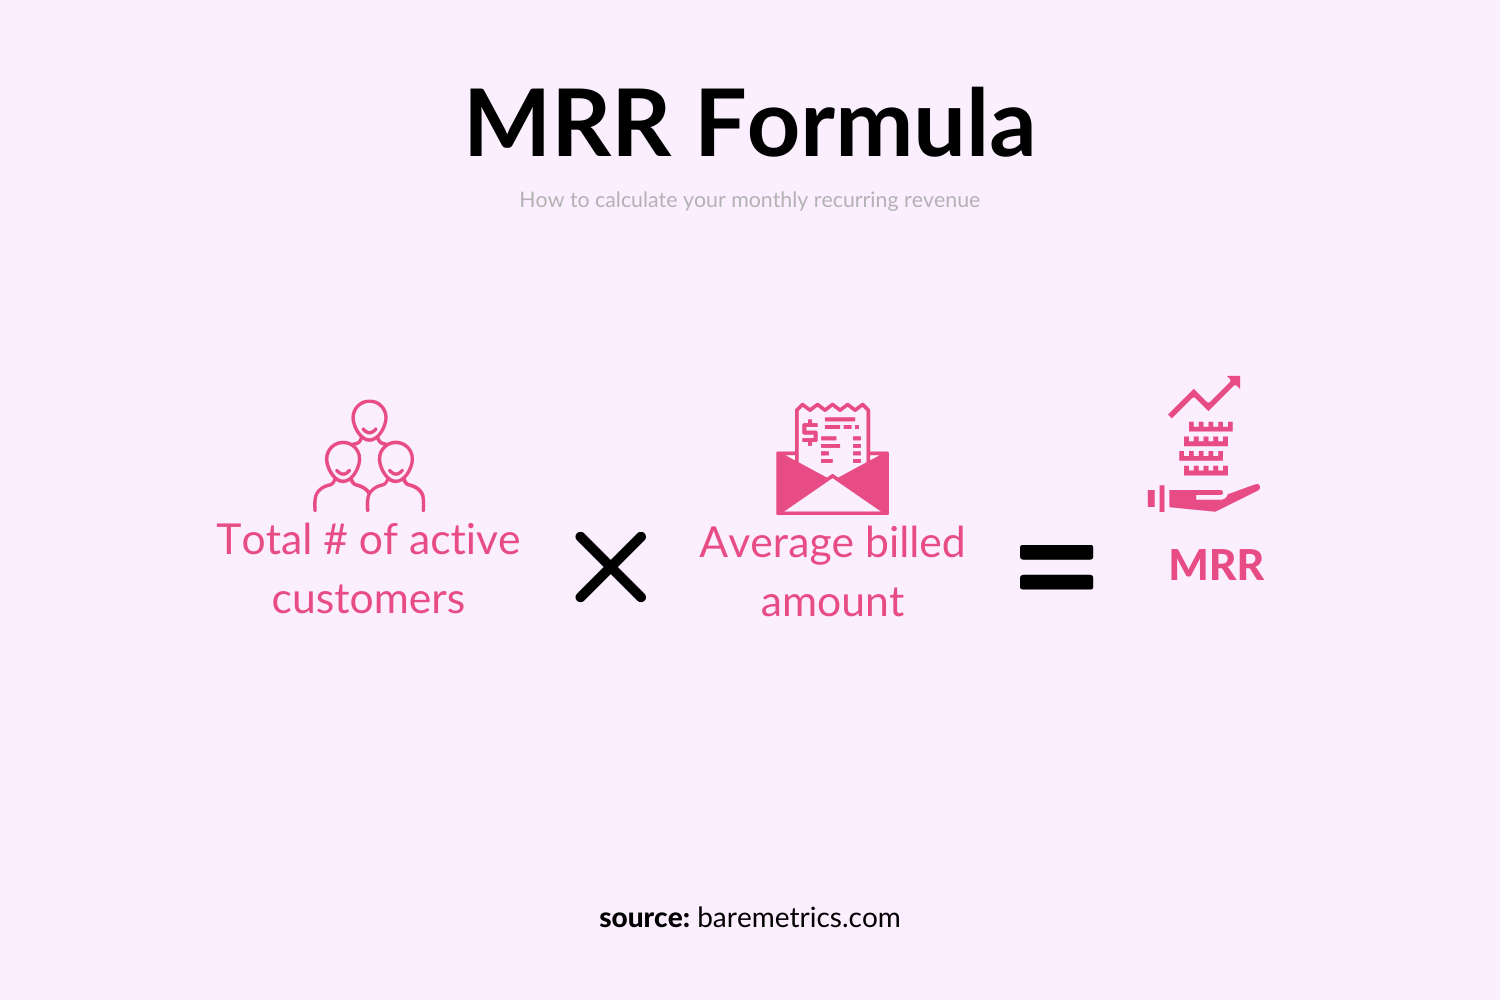 Image showing MRR formula.